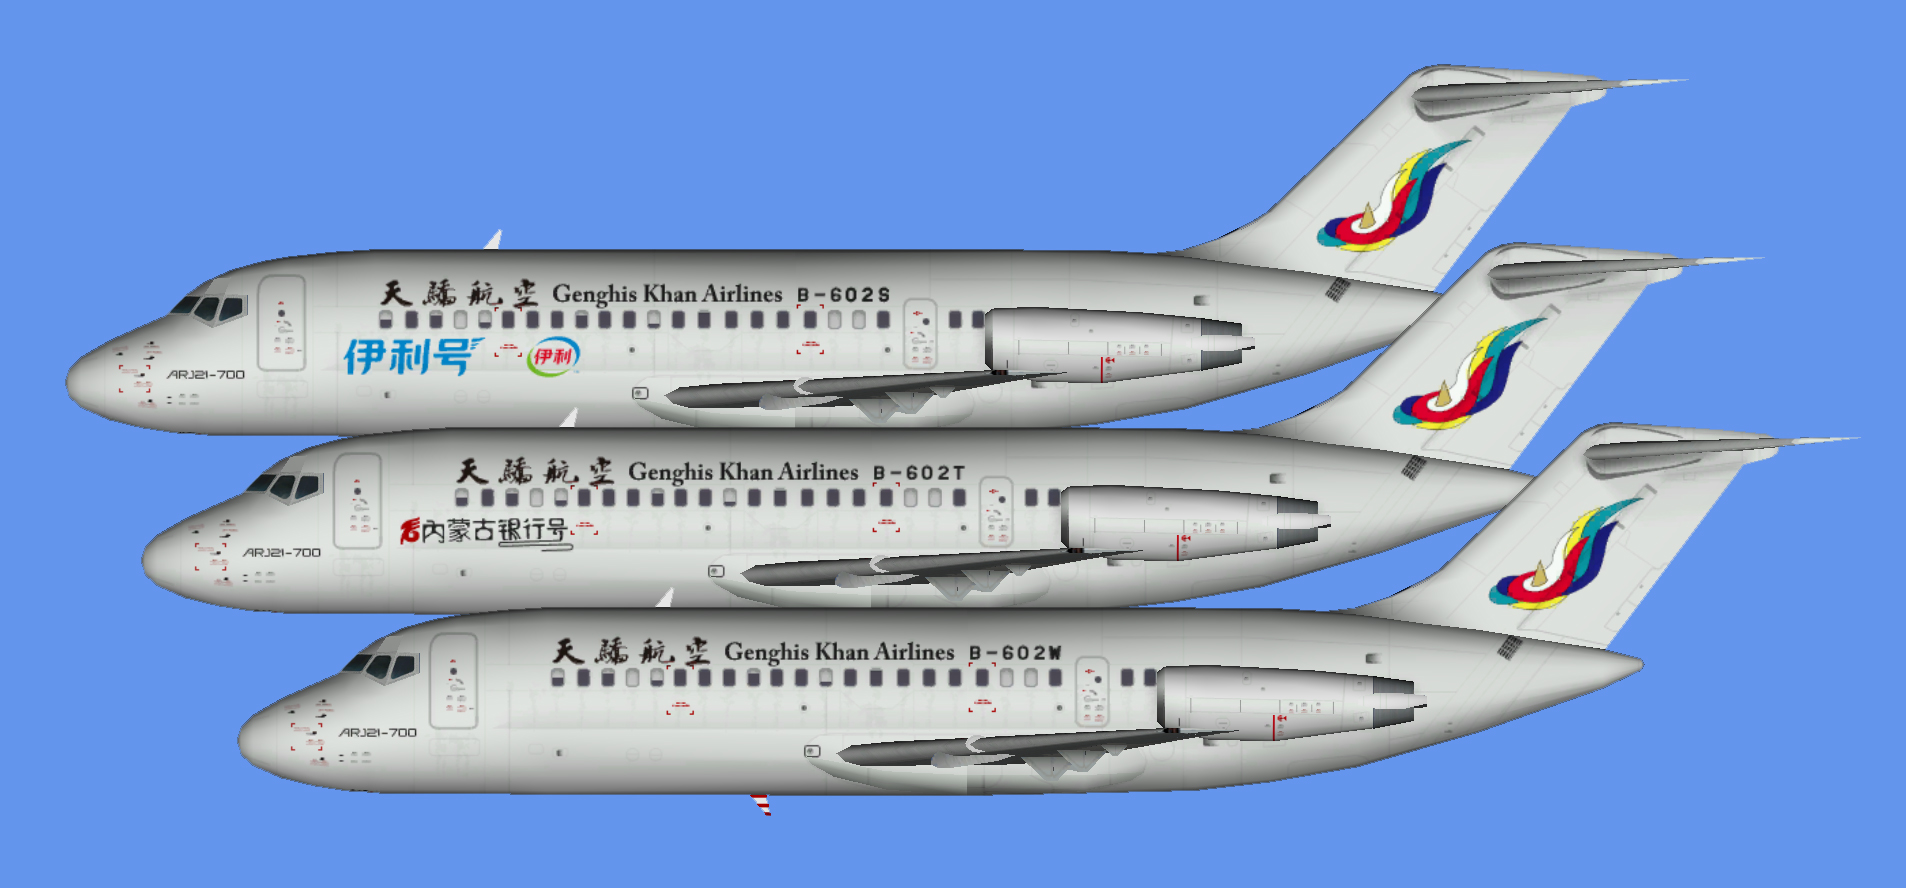 Genghis Khan Airlines ARJ21